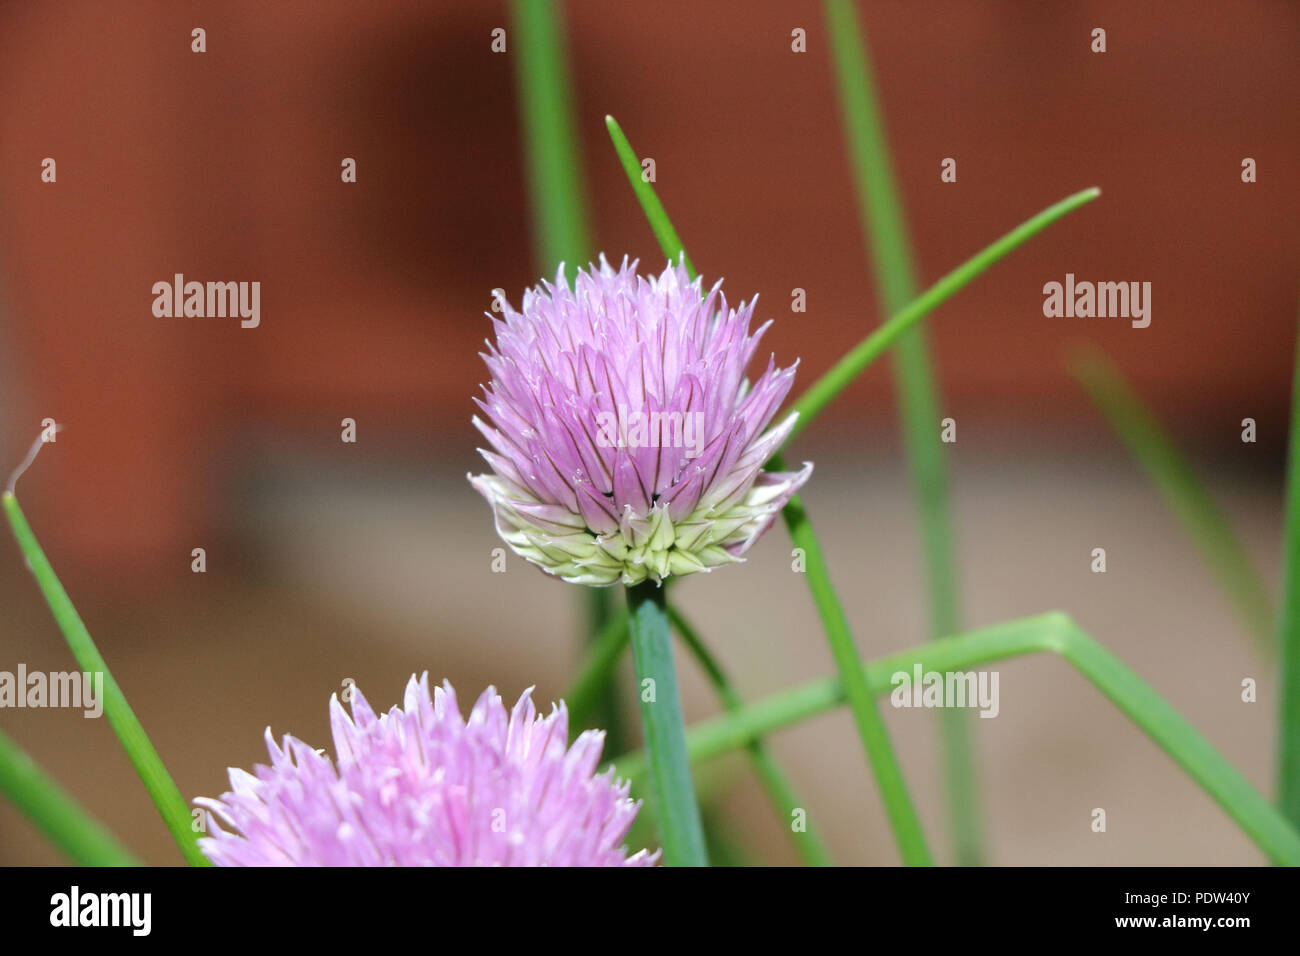 Schnittlauch Blüte, Lila Blume der Schnittlauch Pflanzen, Blumen und Blätter der Schnittlauch sind essbar. Stockfoto